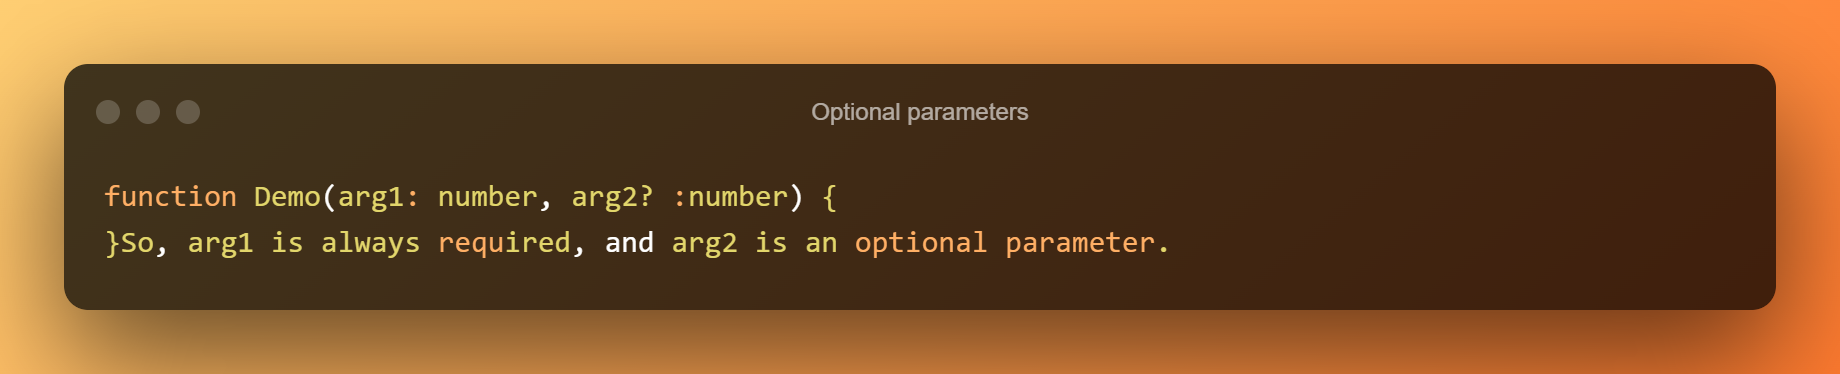 Optional Parameters